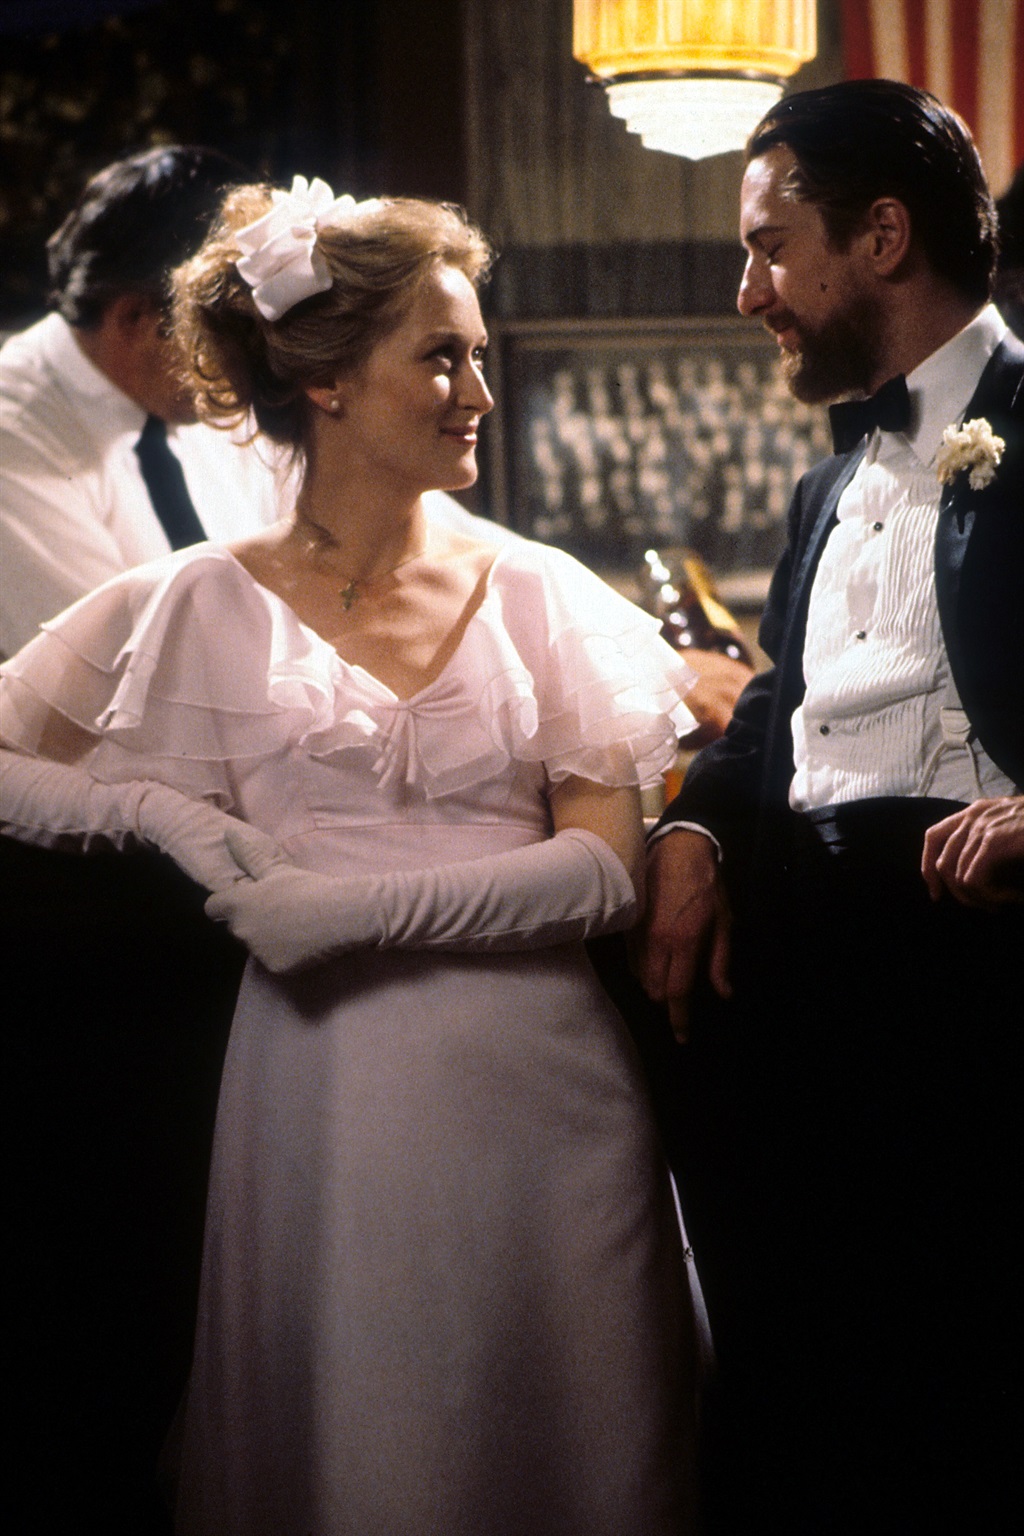 Meryl Streep smiling at Robert De Niro in a scene 